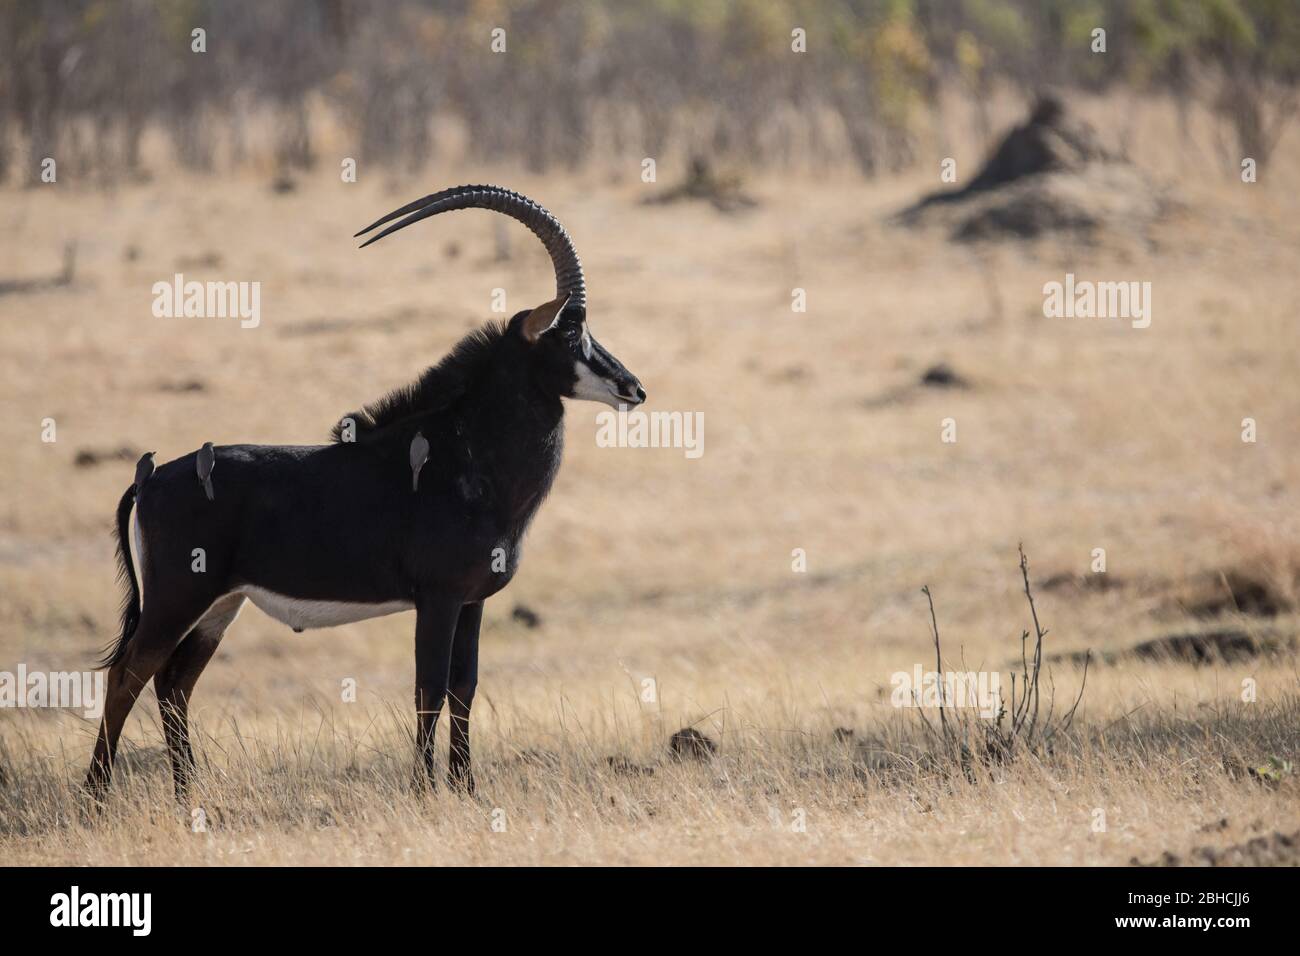 Les paysages de savane du parc national de Hwange, province du Nord de Matabeleland, Zimbabwe, offrent un habitat pour l'antilope de sable, Hippotragus niger. Banque D'Images